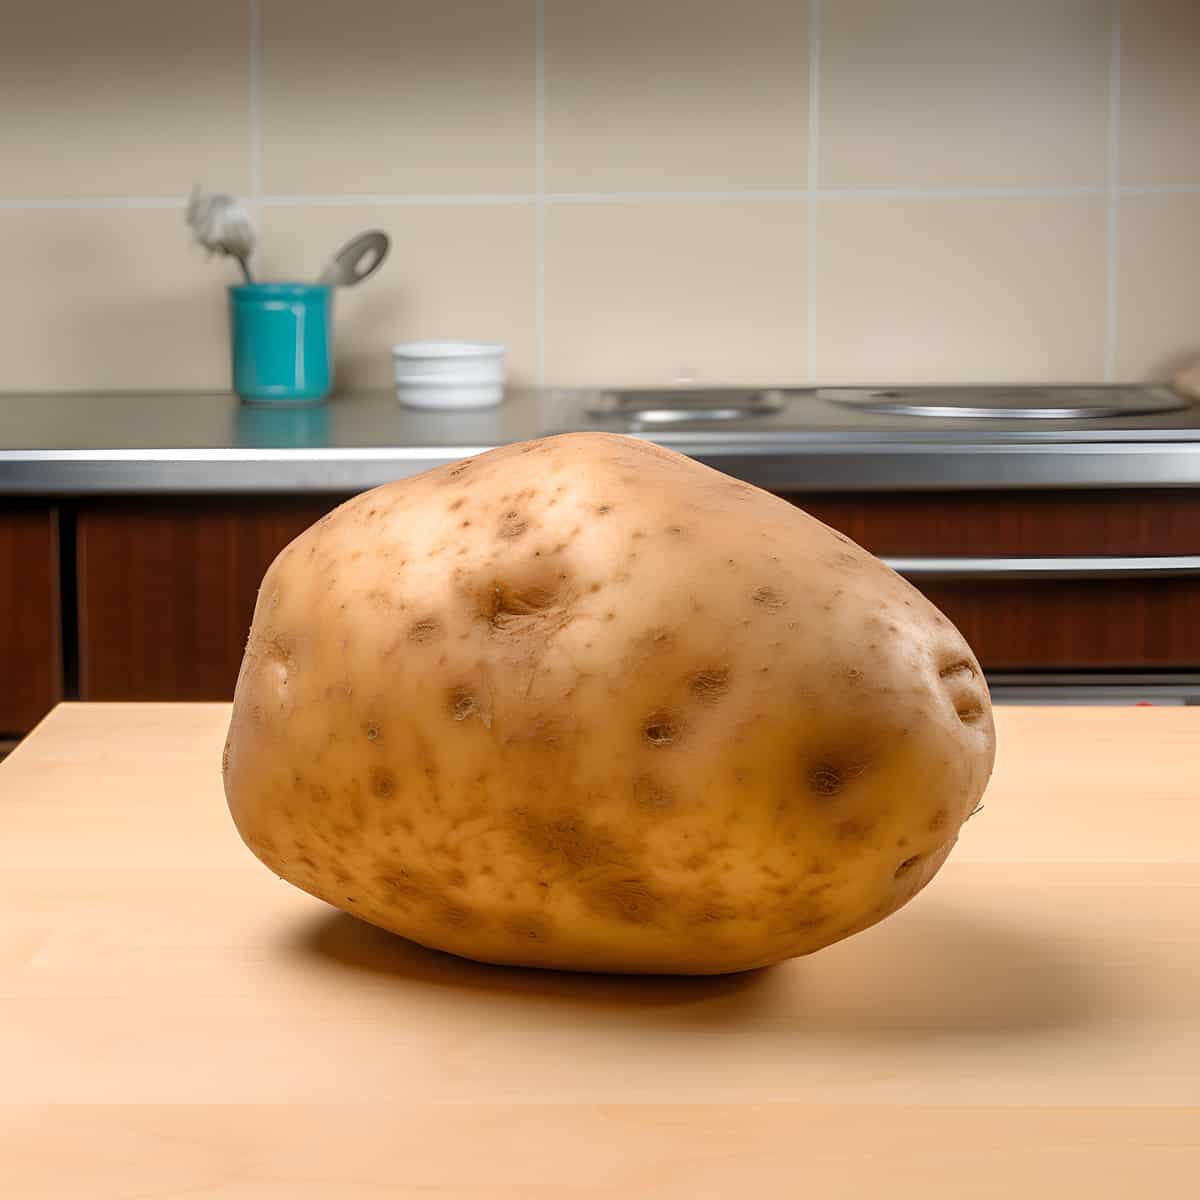 Espirit Potatoes on a kitchen counter